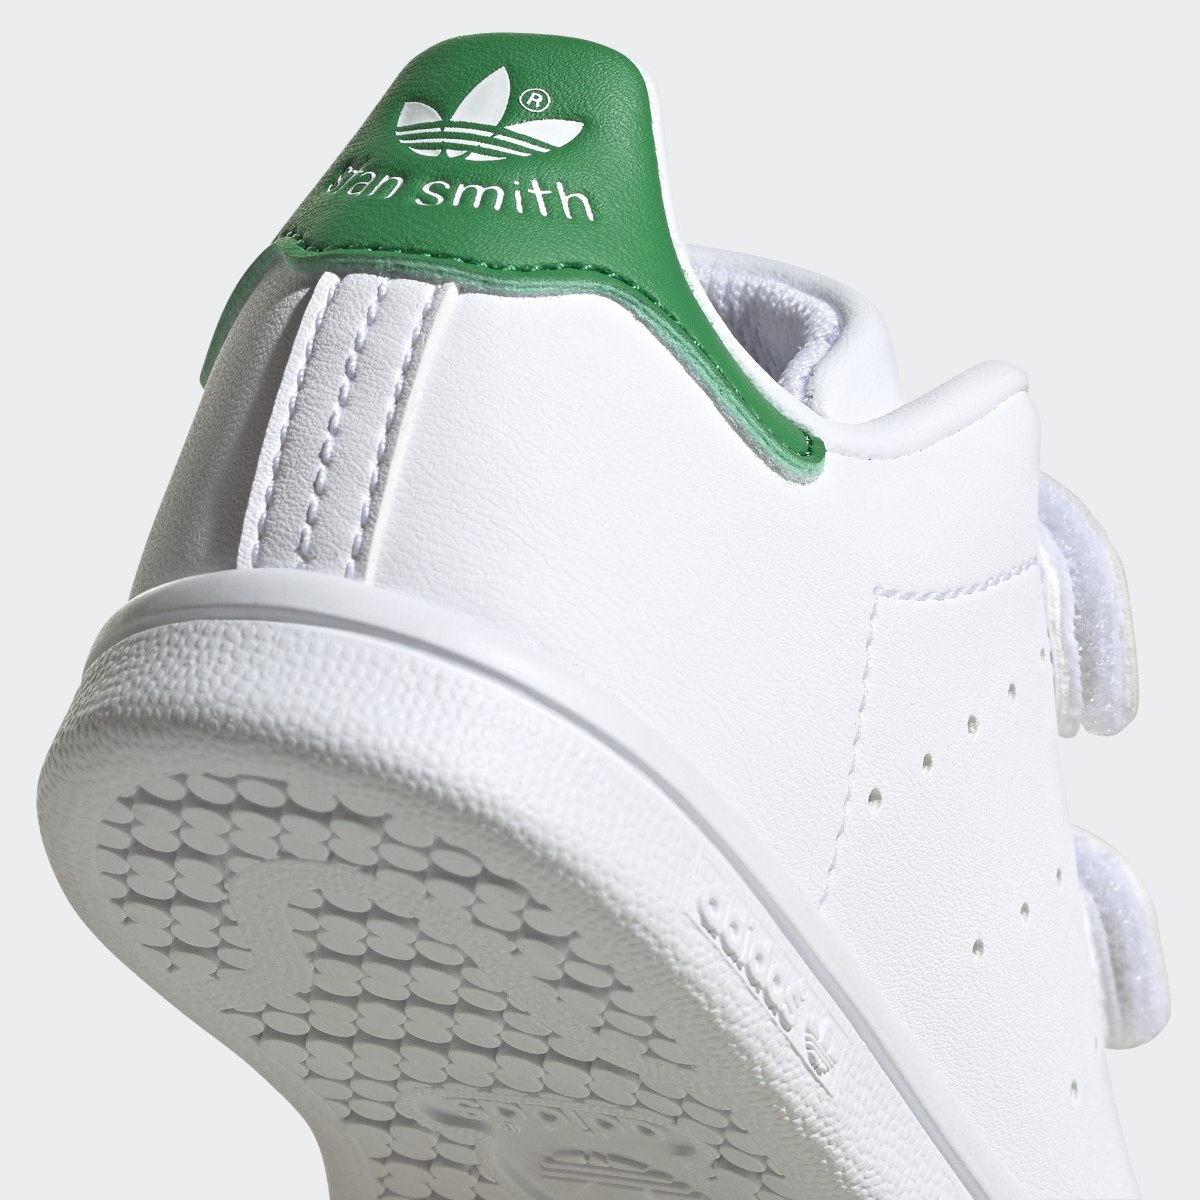 Adidas Buty Stan Smith. 9